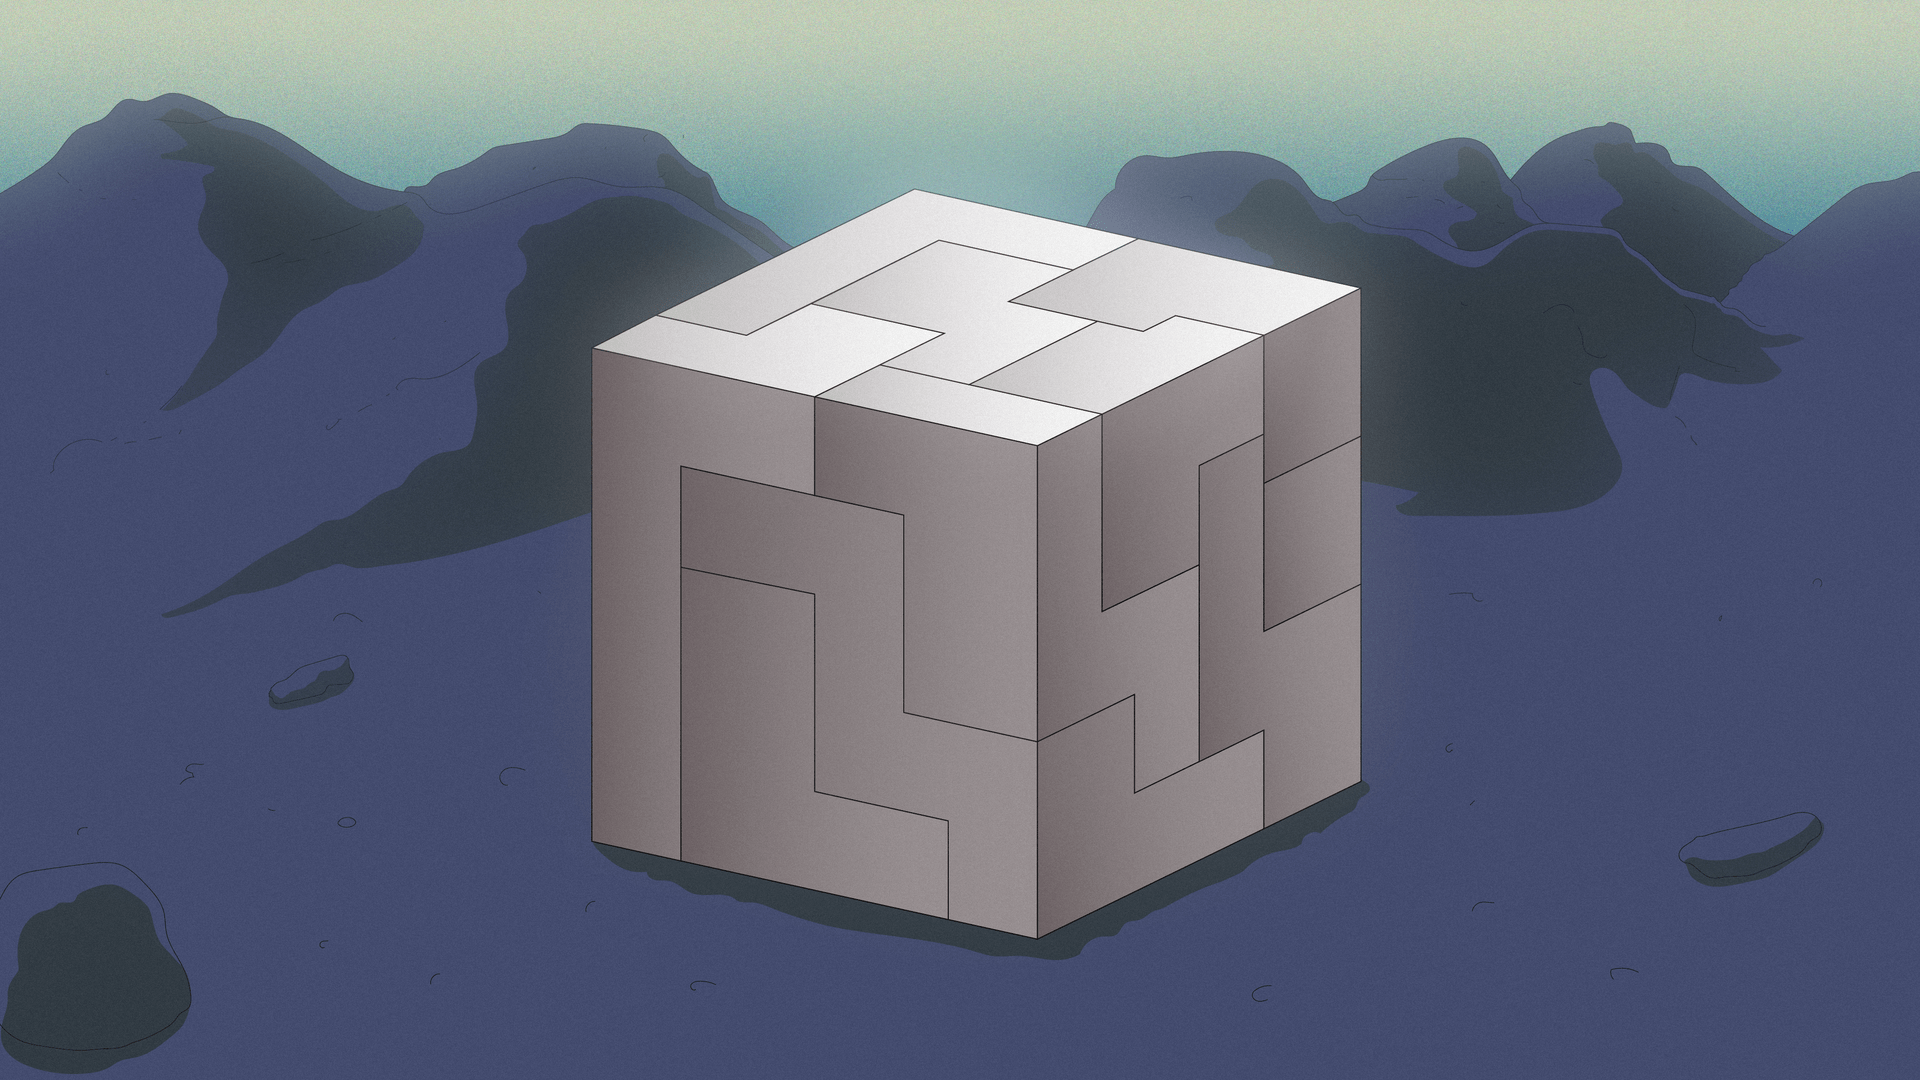 Illustratie van een blokpuzzel